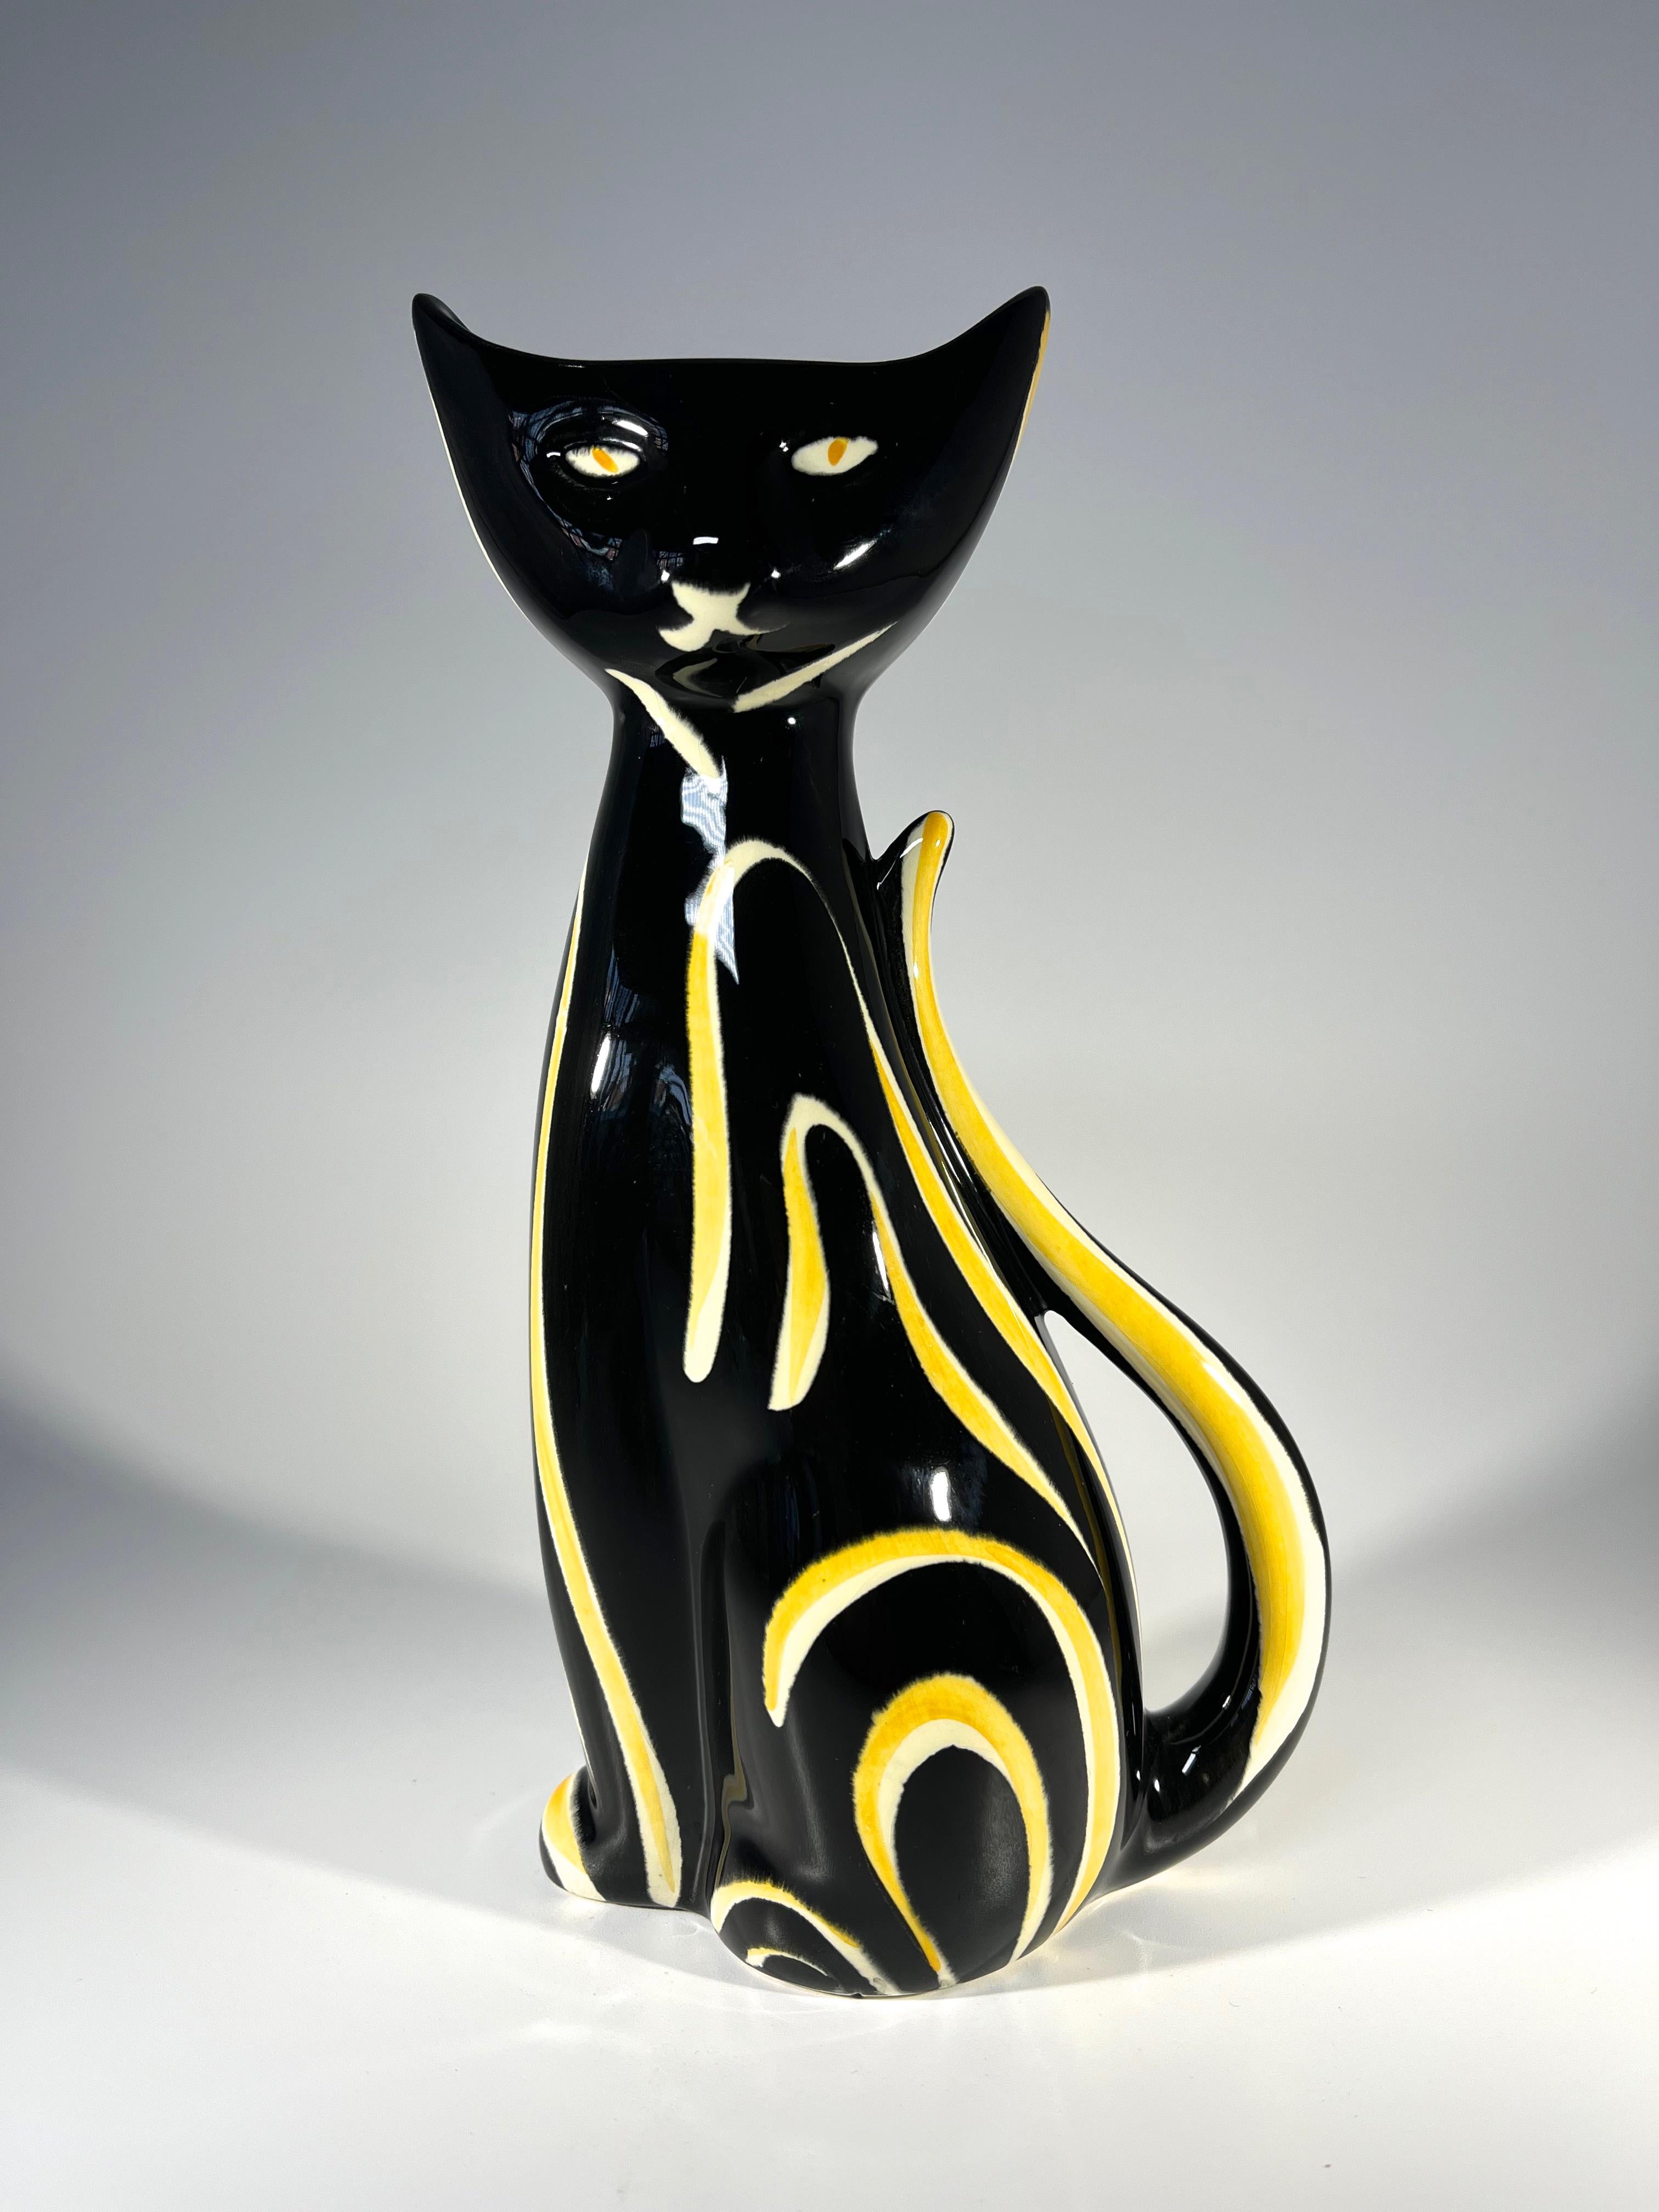 Vase à chat Tigris noir et jaune conçu par Anneleise Beckh pour la société ouest-allemande Schmider Keramik.
Expression impénétrable sur cette pièce au design fort et rétro.
Circa 1950's
Numéroté 4310 à la base
Hauteur 8,5 pouces, Largeur 4 pouces,